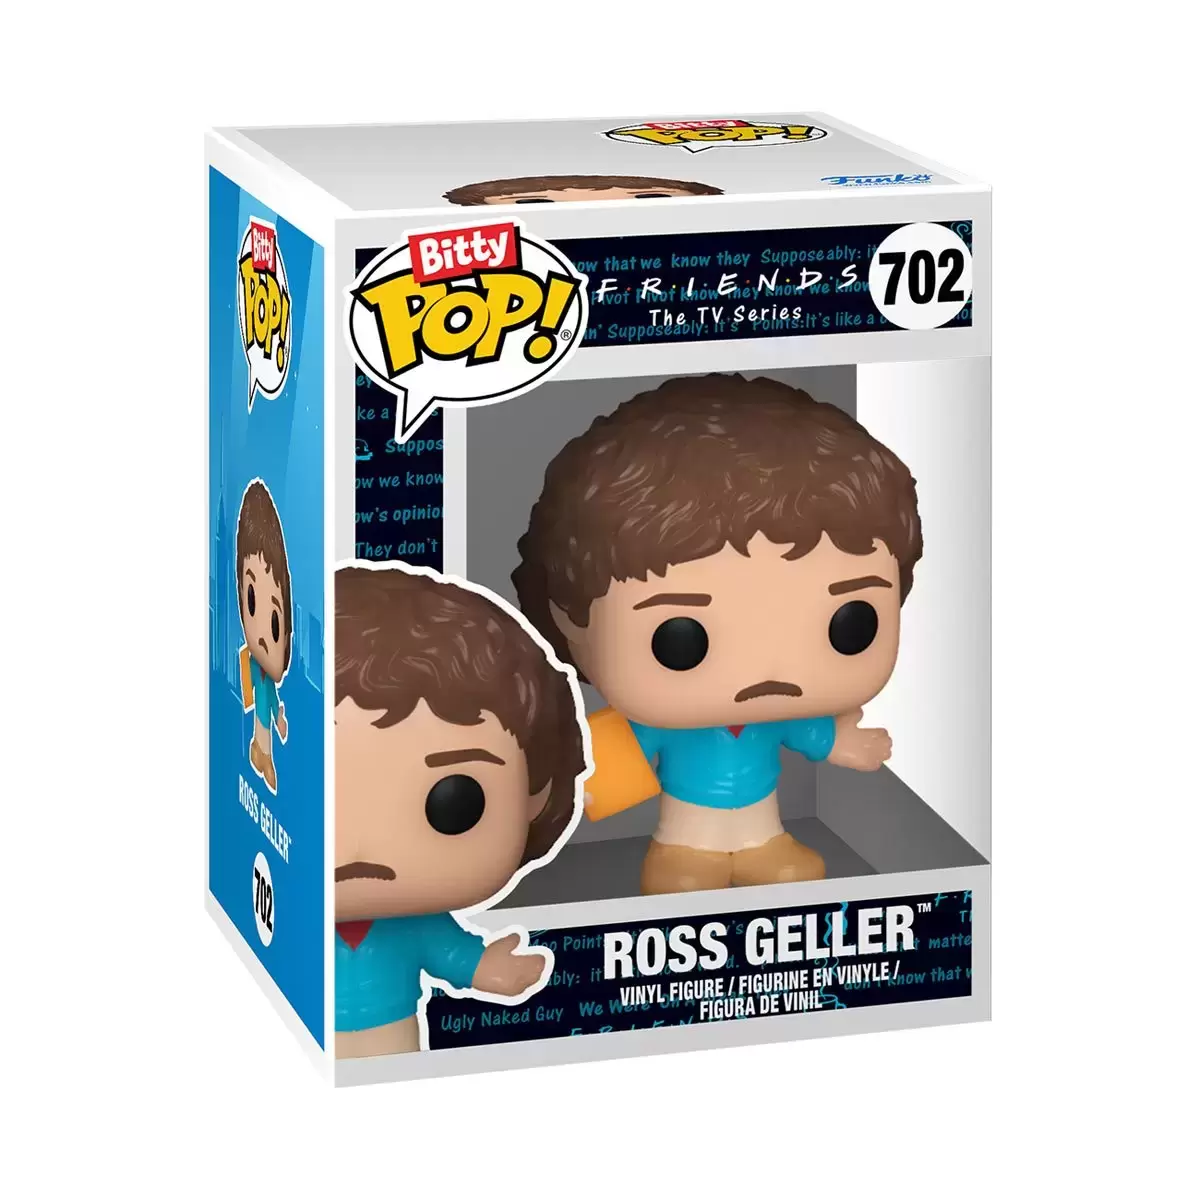 Friends - Ross Geller - Bitty POP! action figure 702